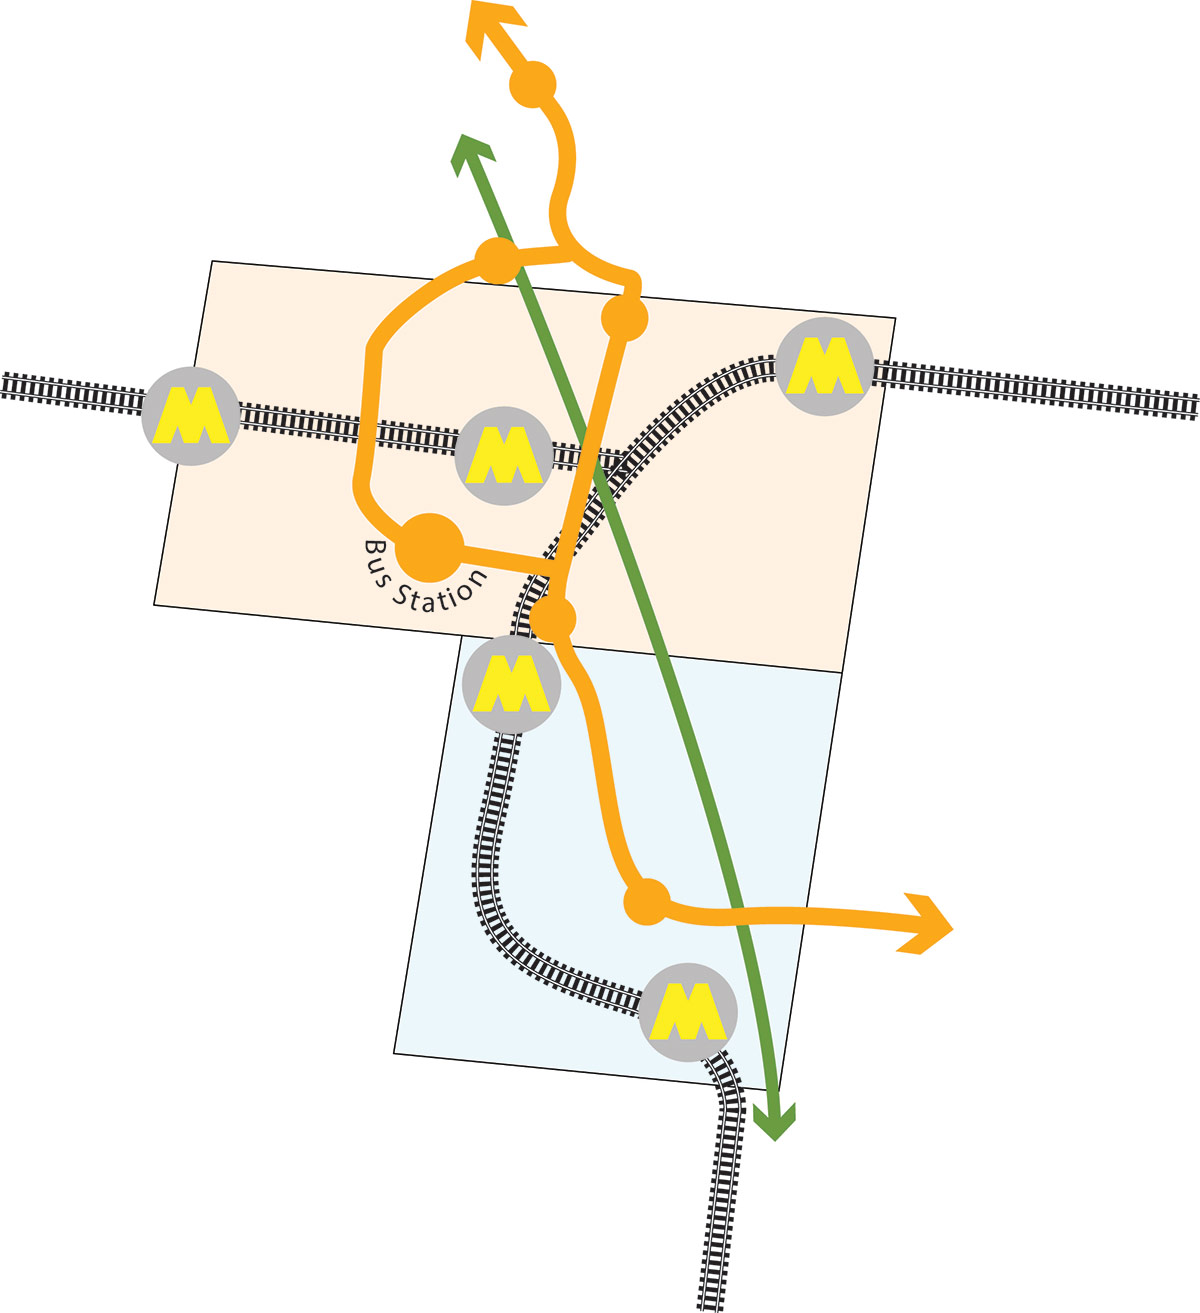 public transport diagram